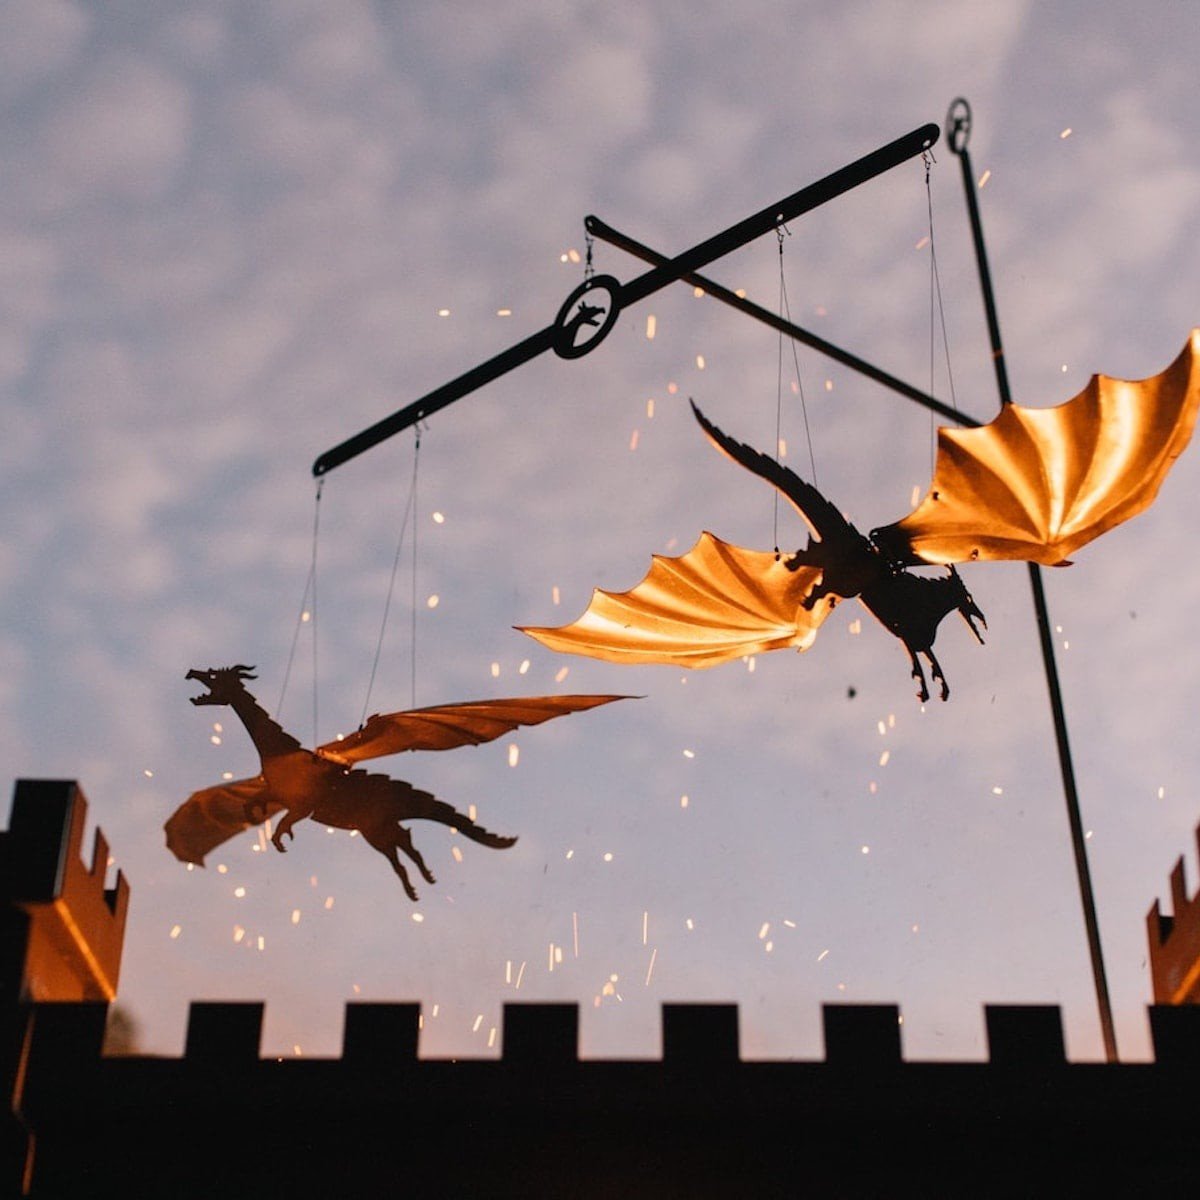 Campfire Flyers: Những con rồng bay bằng lửa đưa nghệ thuật chuyển động học lên một tầm cao mới